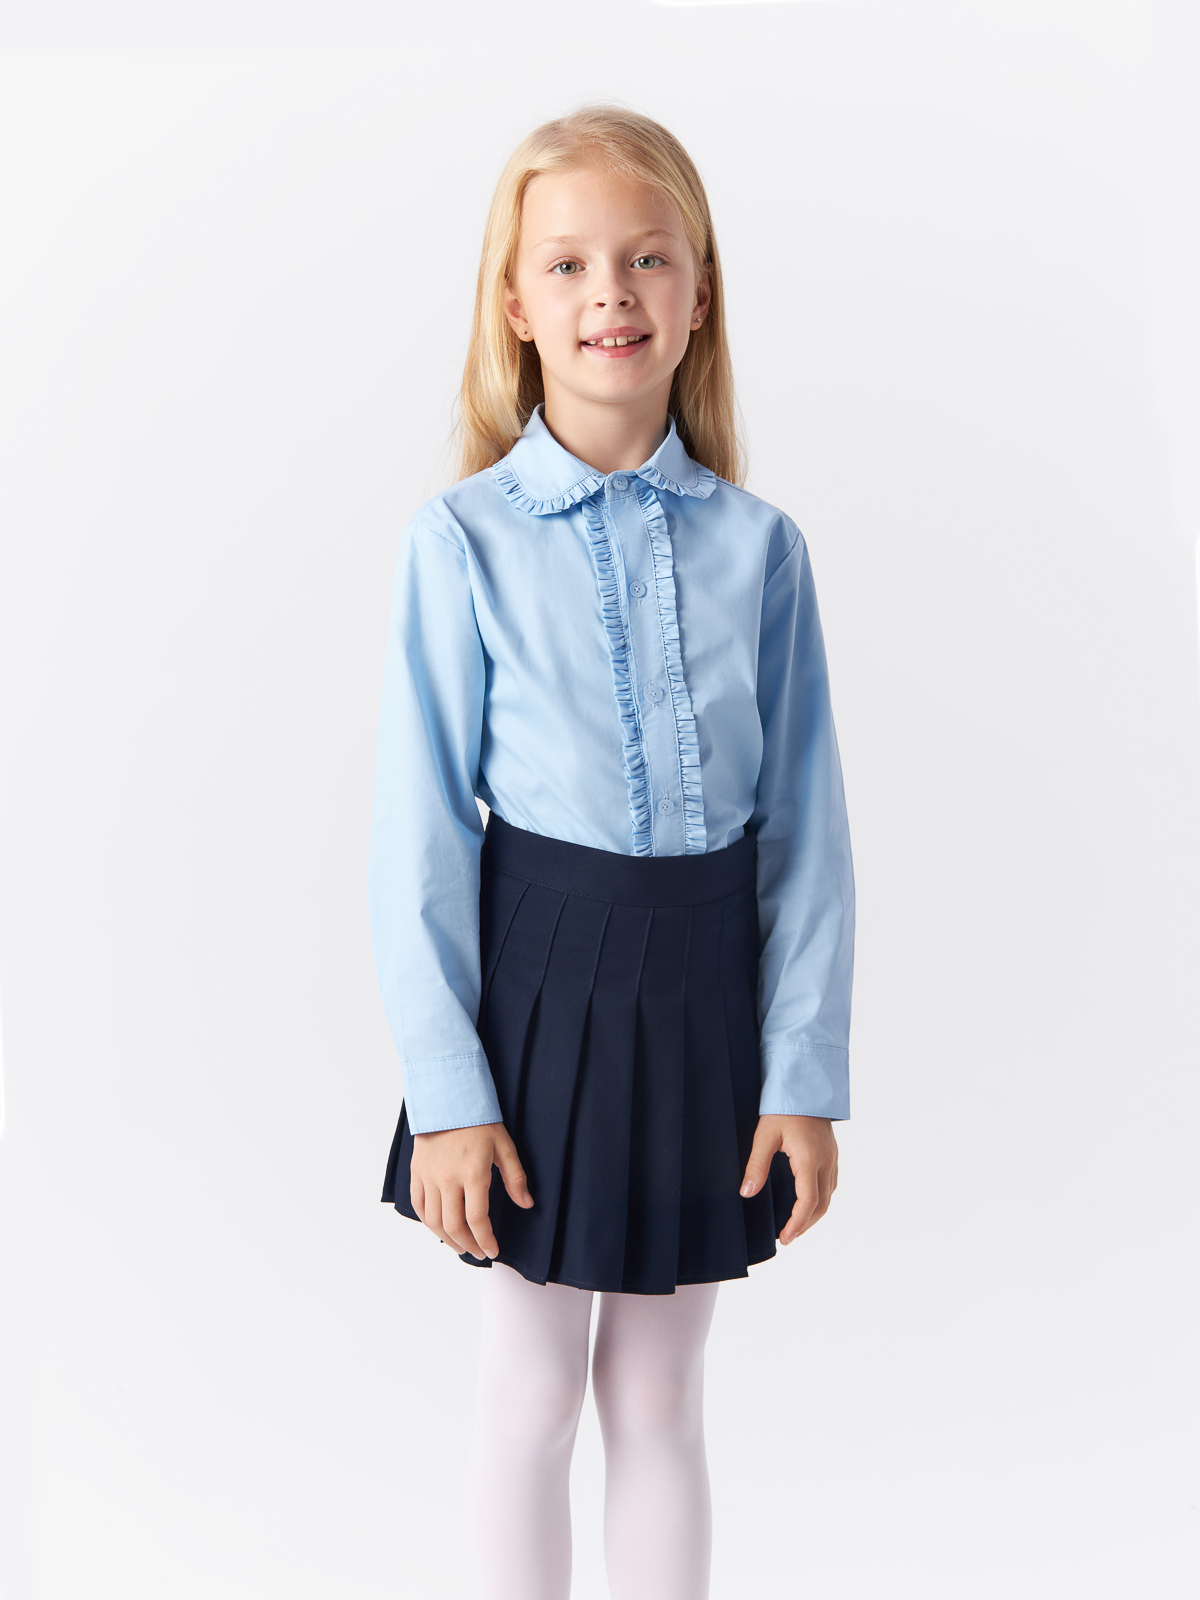 Блузка Yiwu Xflot Supply Chain детская, BS-2blue, размер 150 см блузка трикотажная школьная белая button blue 134